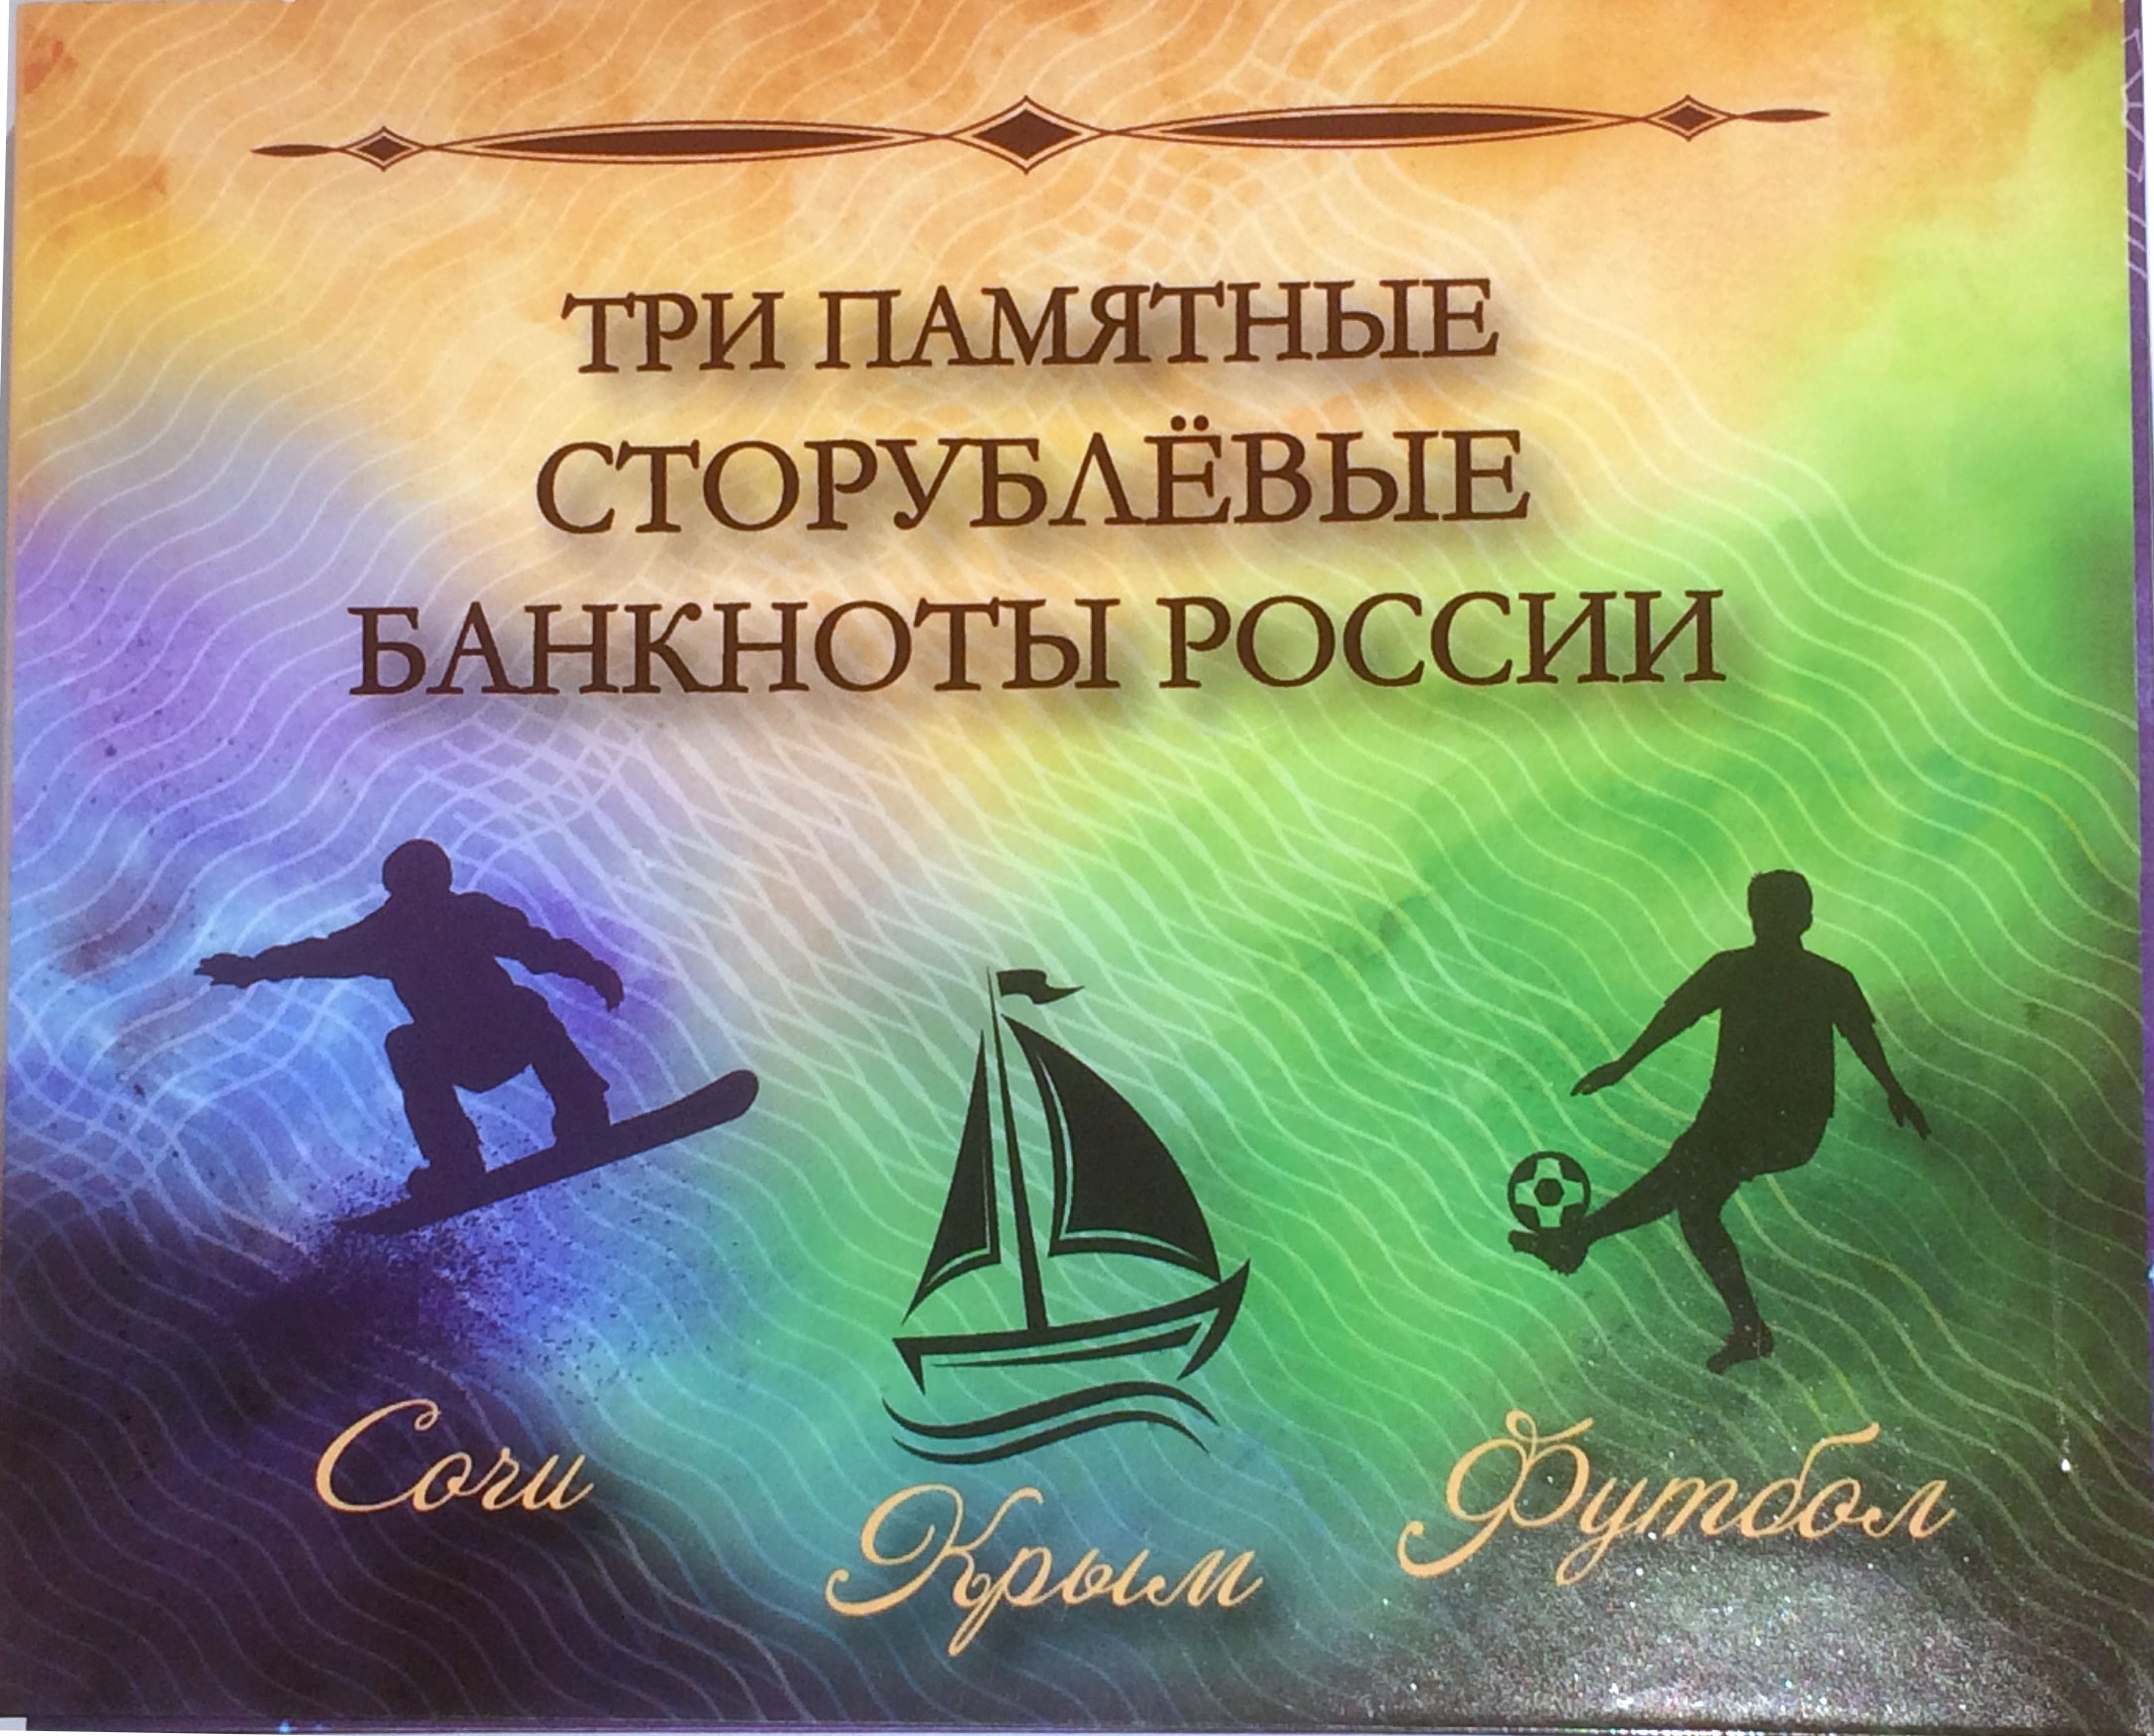 Набор Альбом 3 банкноты Футбол ЧМ 2018 Сочи Крым